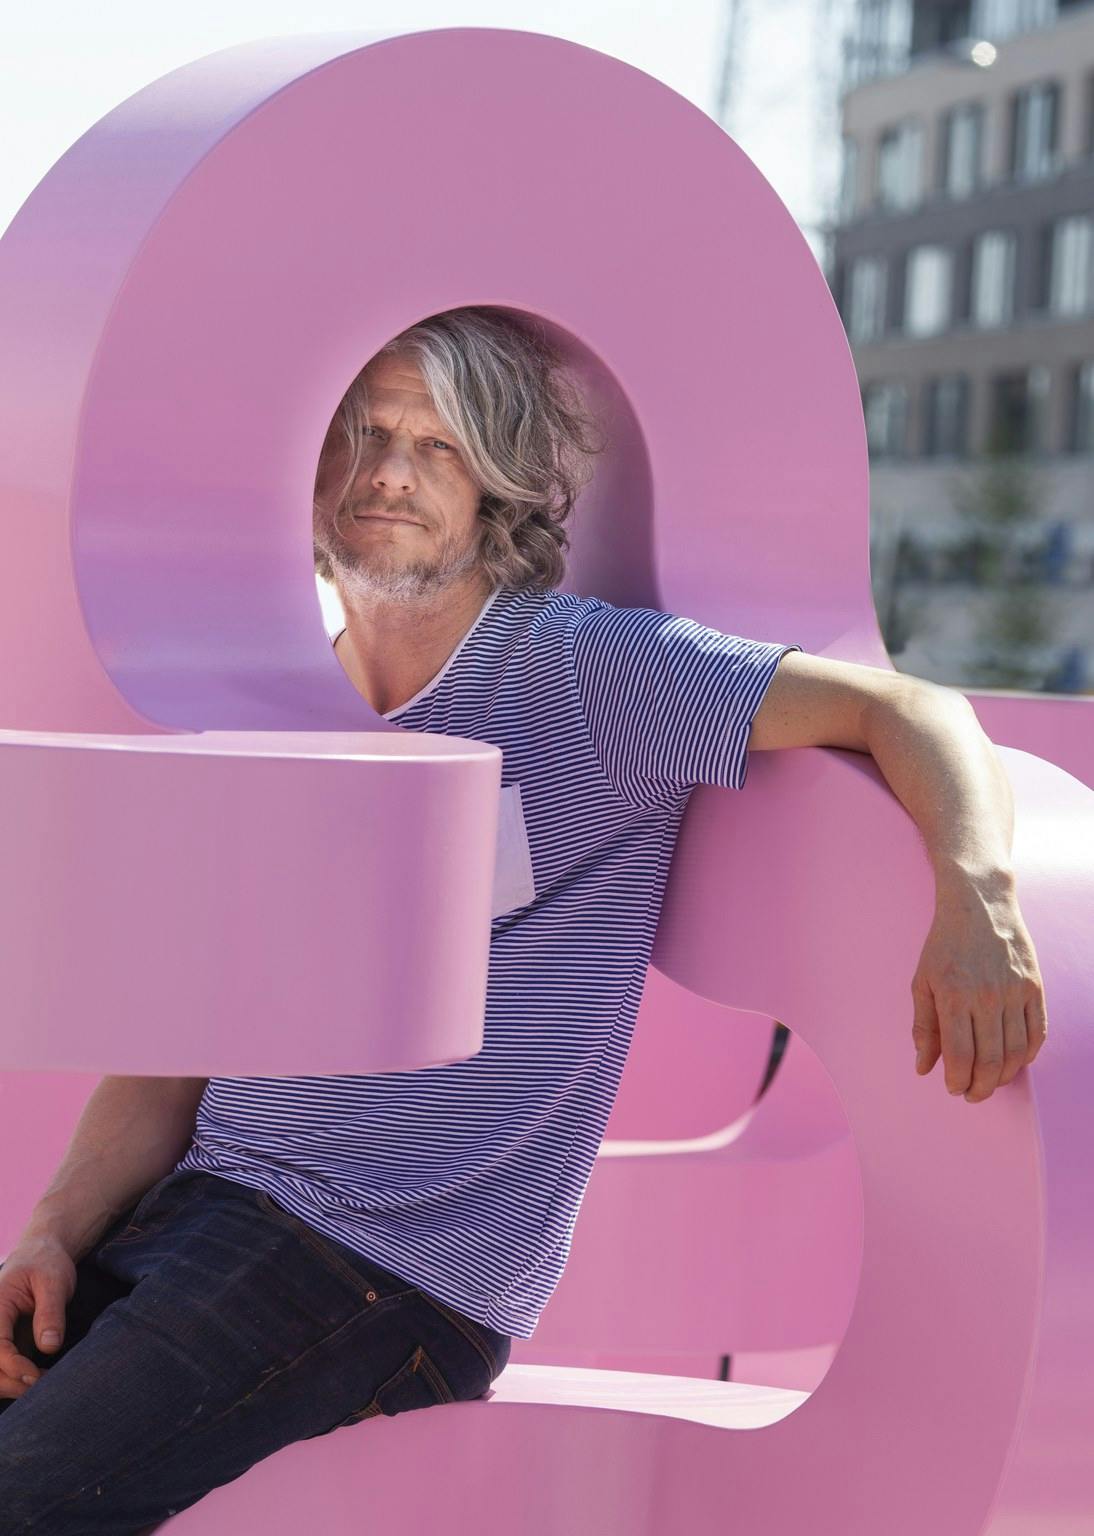 Jacob Dahlgren sat within his metal pink sculpture